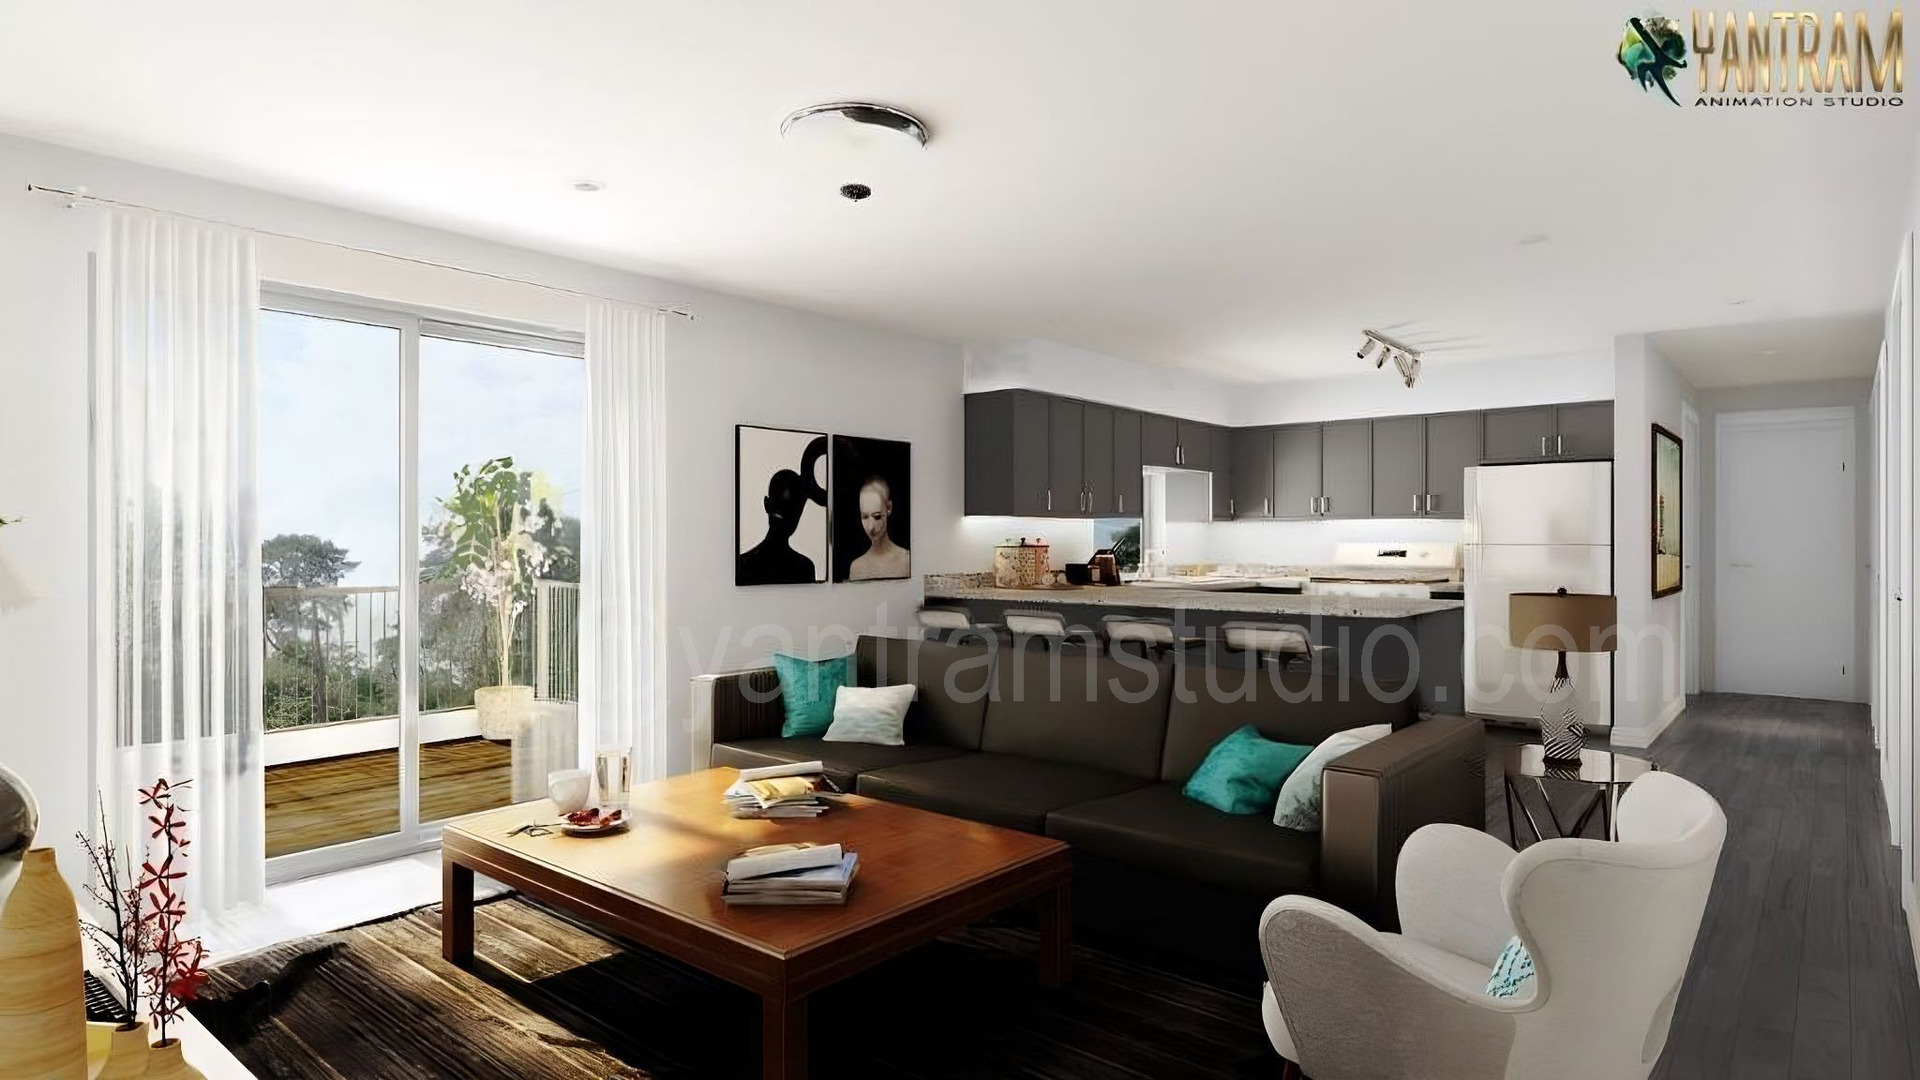 Yantram-Architectural-Design-Studio-living-room-with-kitchen.jpg -  by Yantramarchitecturaldesignstudio